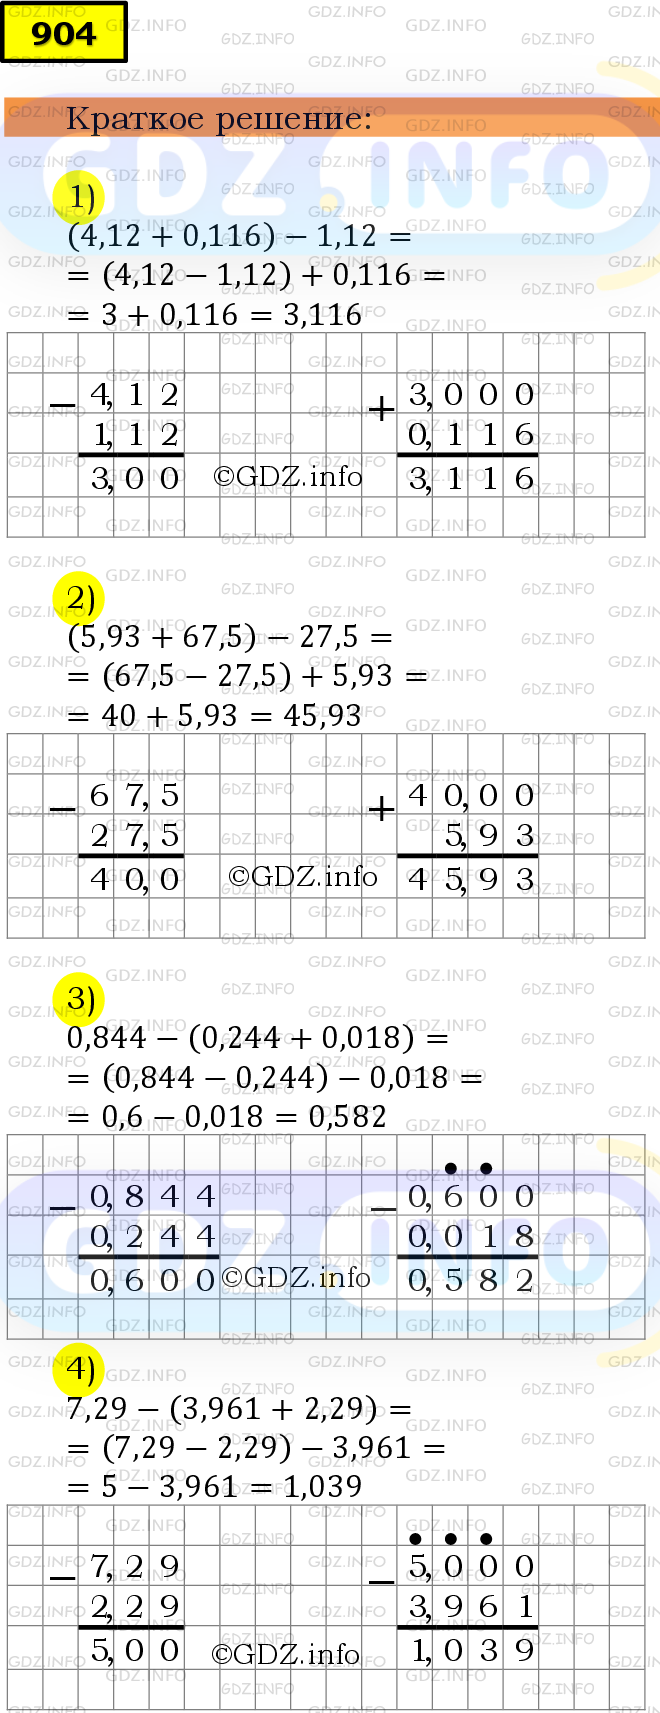 Фото решения 6: Номер №904 из ГДЗ по Математике 5 класс: Мерзляк А.Г. г.